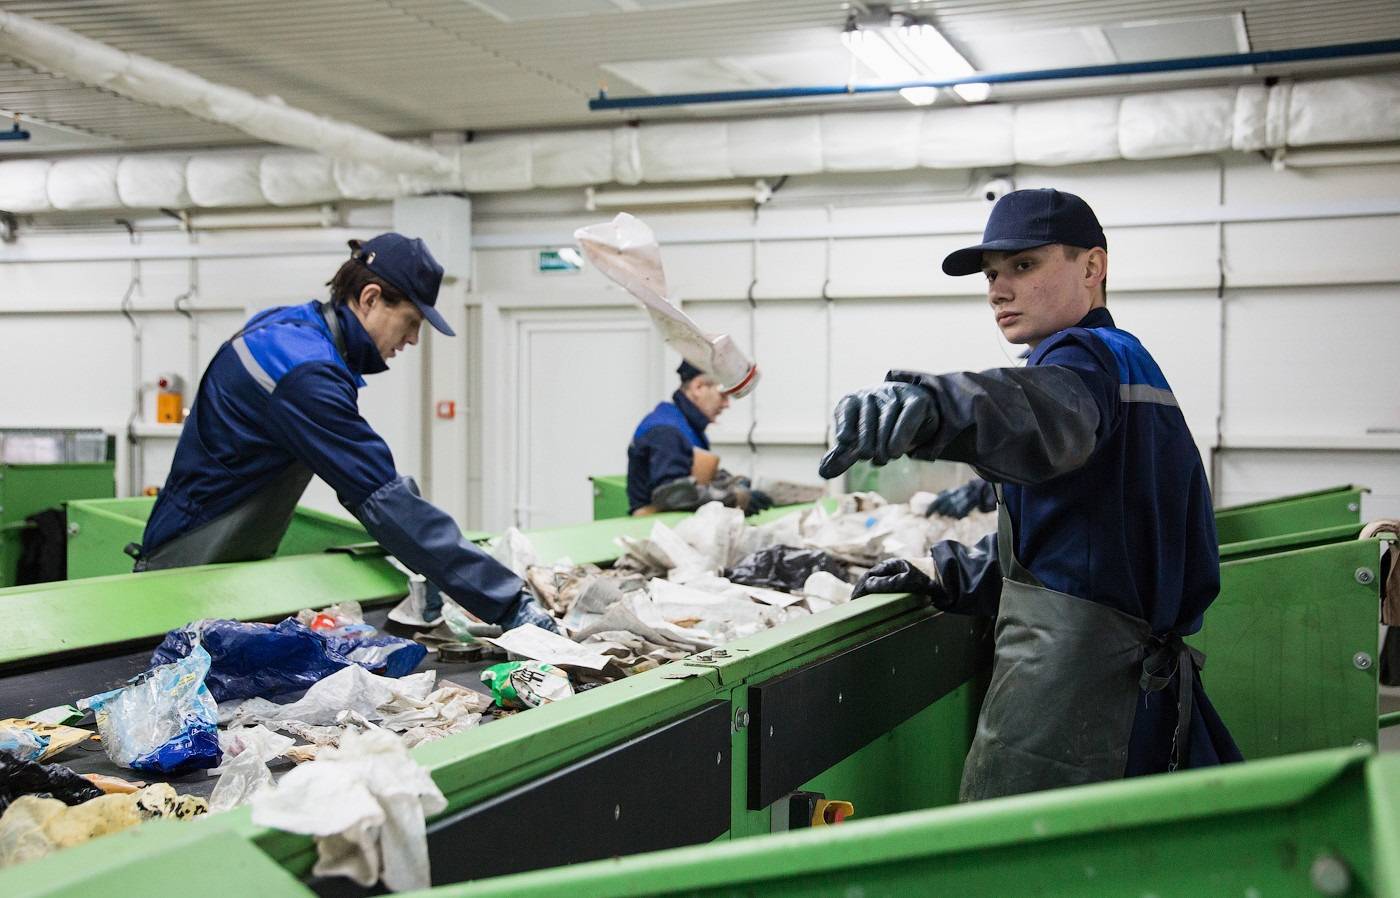 Переработка мусора, как бизнес в россии: несколько идей развития бизнеса на отходах с минимальными вложениями